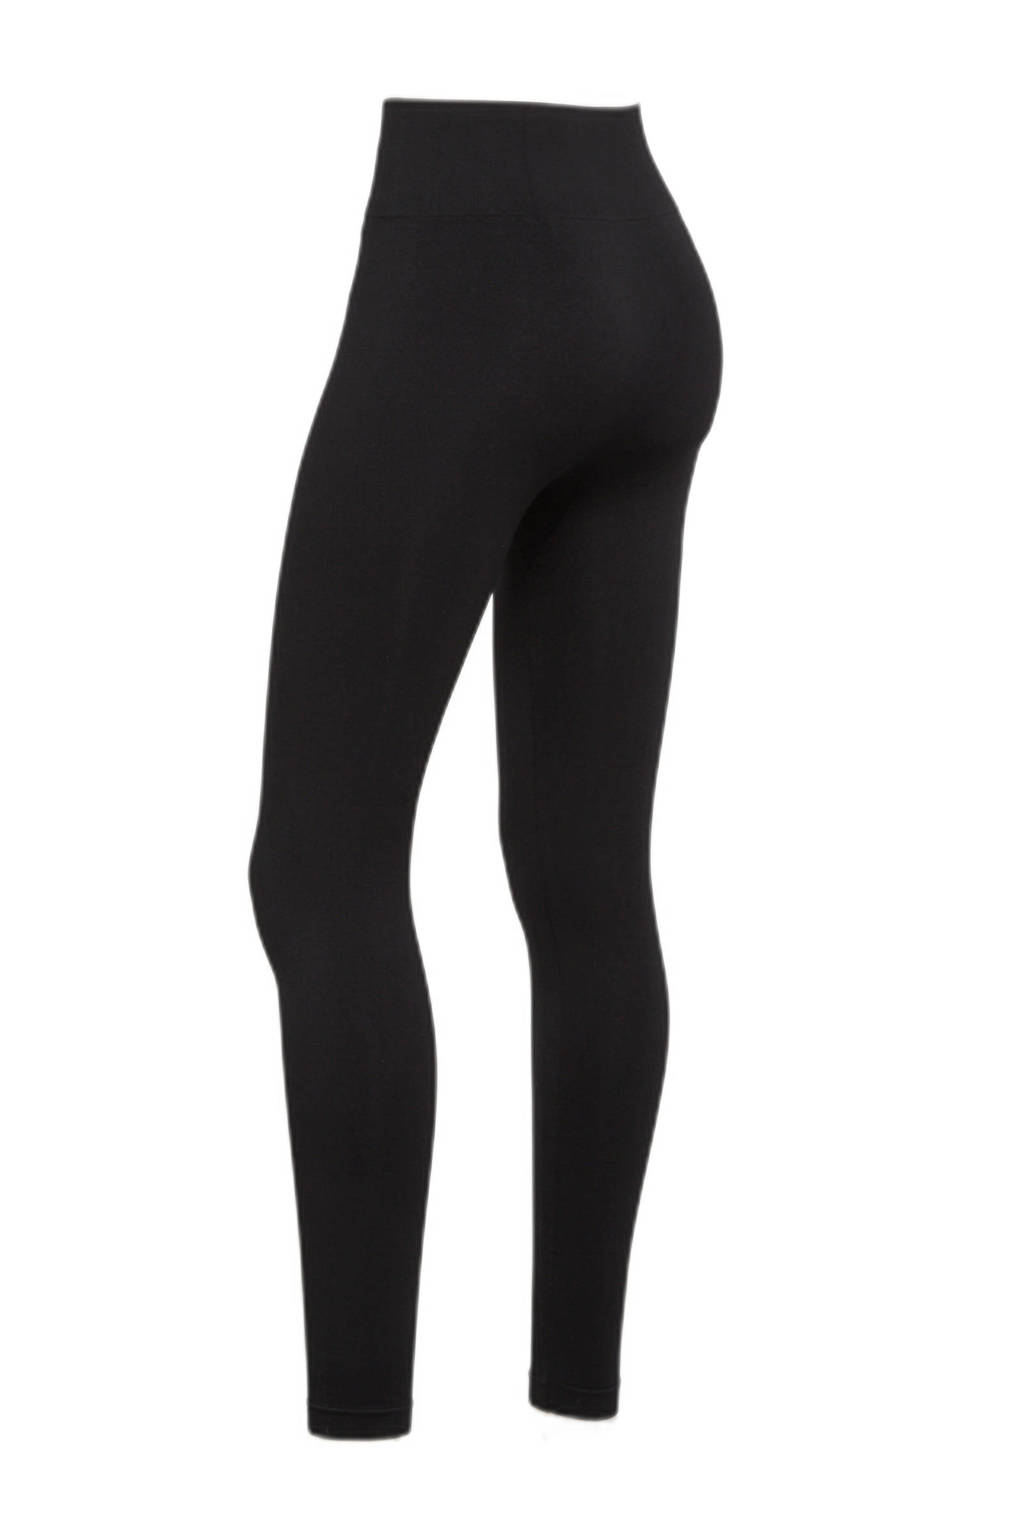 Set van 2 zwarte dames anytime legging van polyamide met skinny fit, regular waist en elastische tailleband